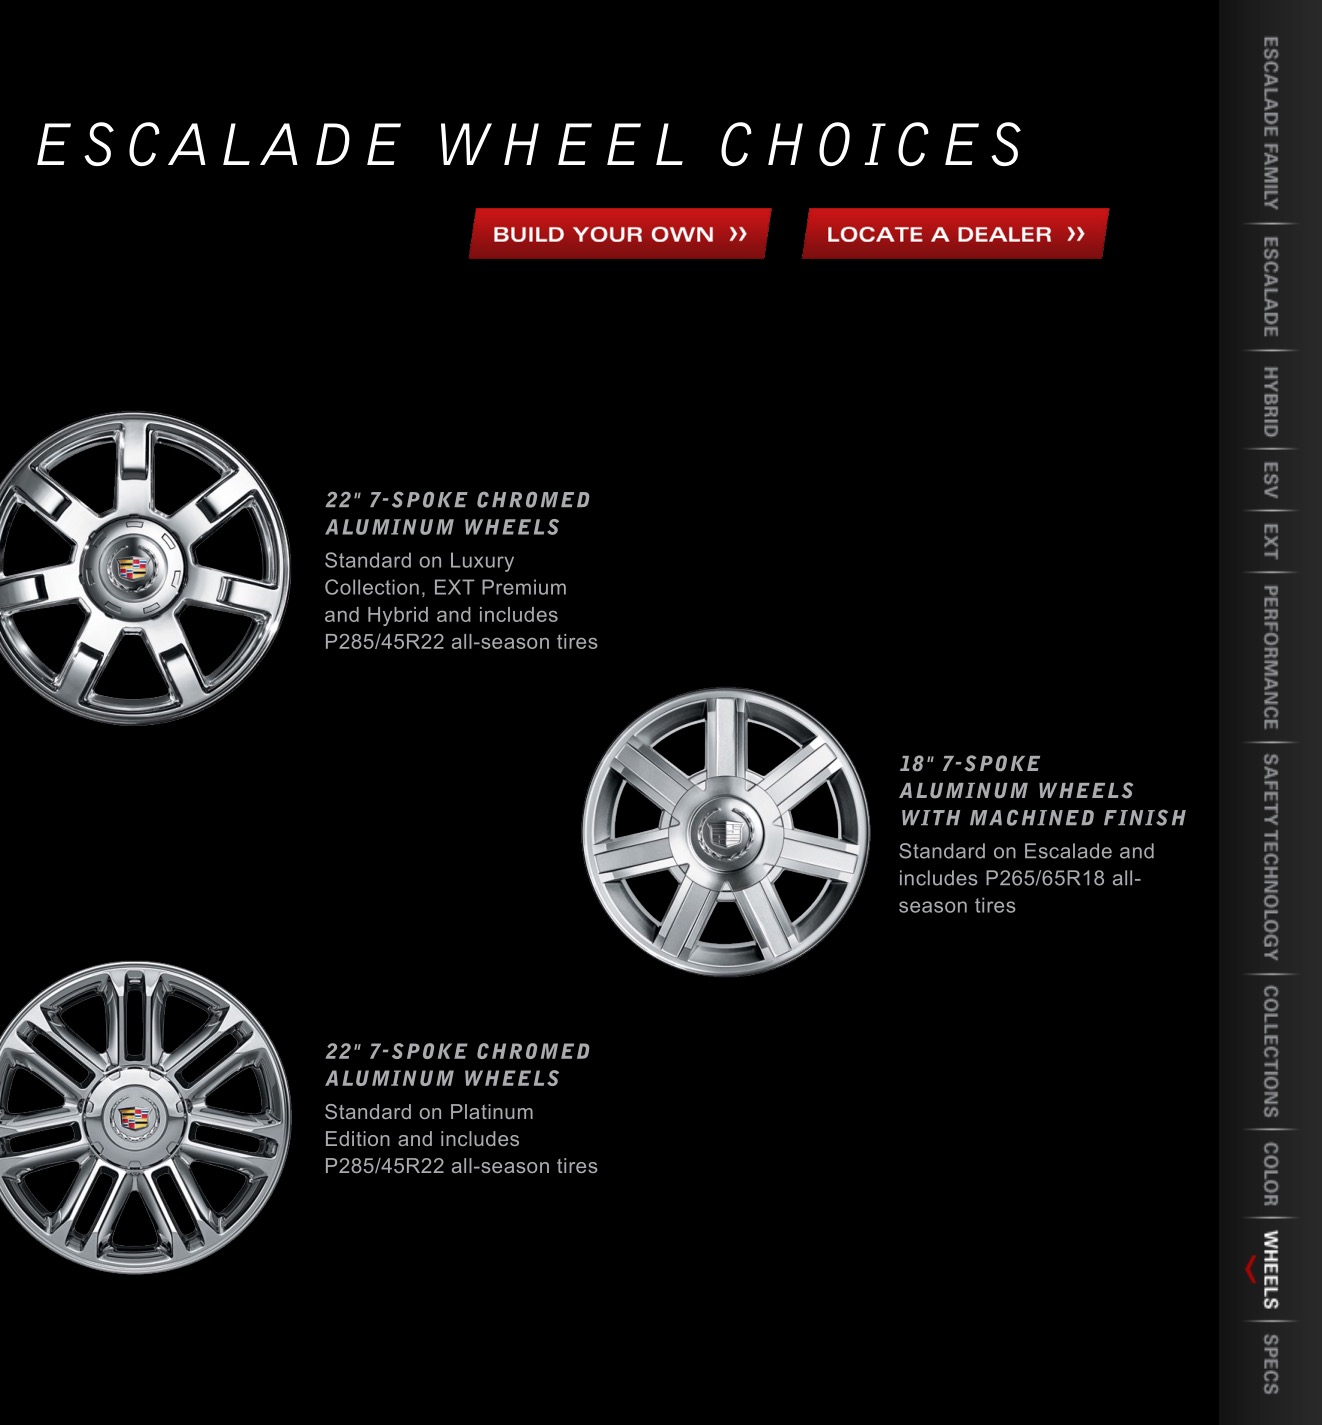 2013 Cadillac Escalade Brochure Page 5